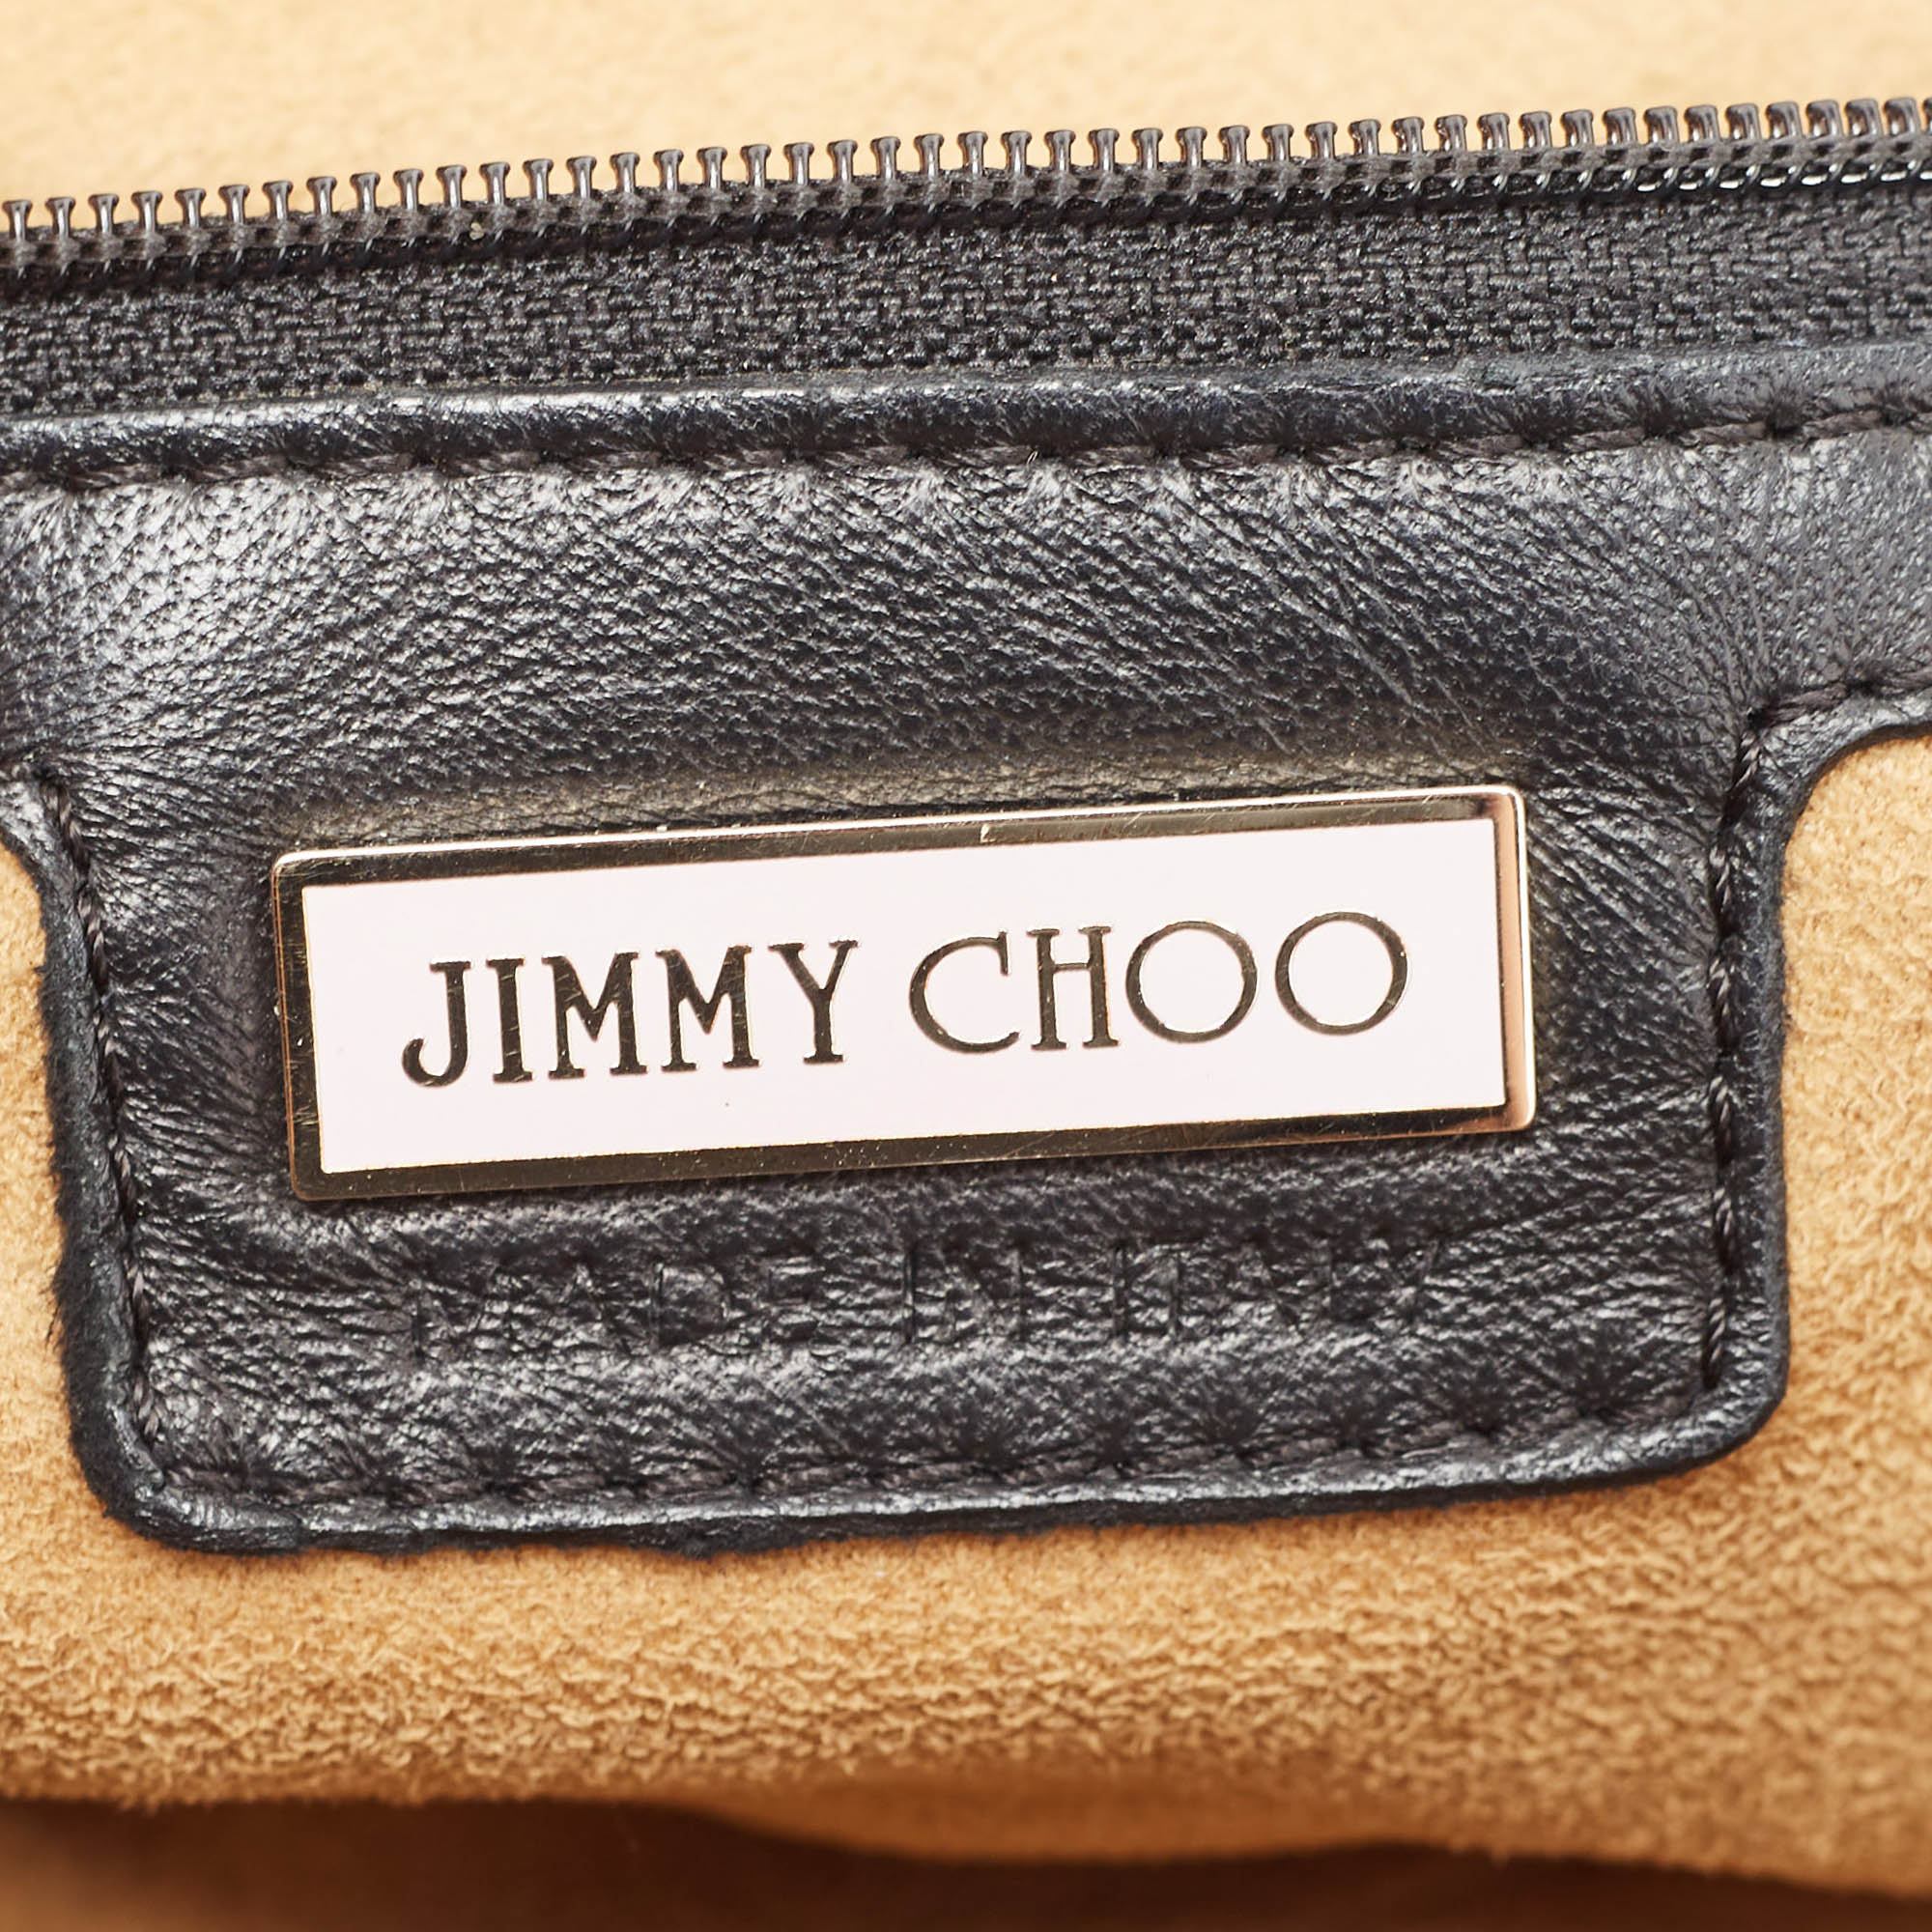 Jimmy Choo Black Python Leather And Suede Carolina Fringe Shoulder Bag